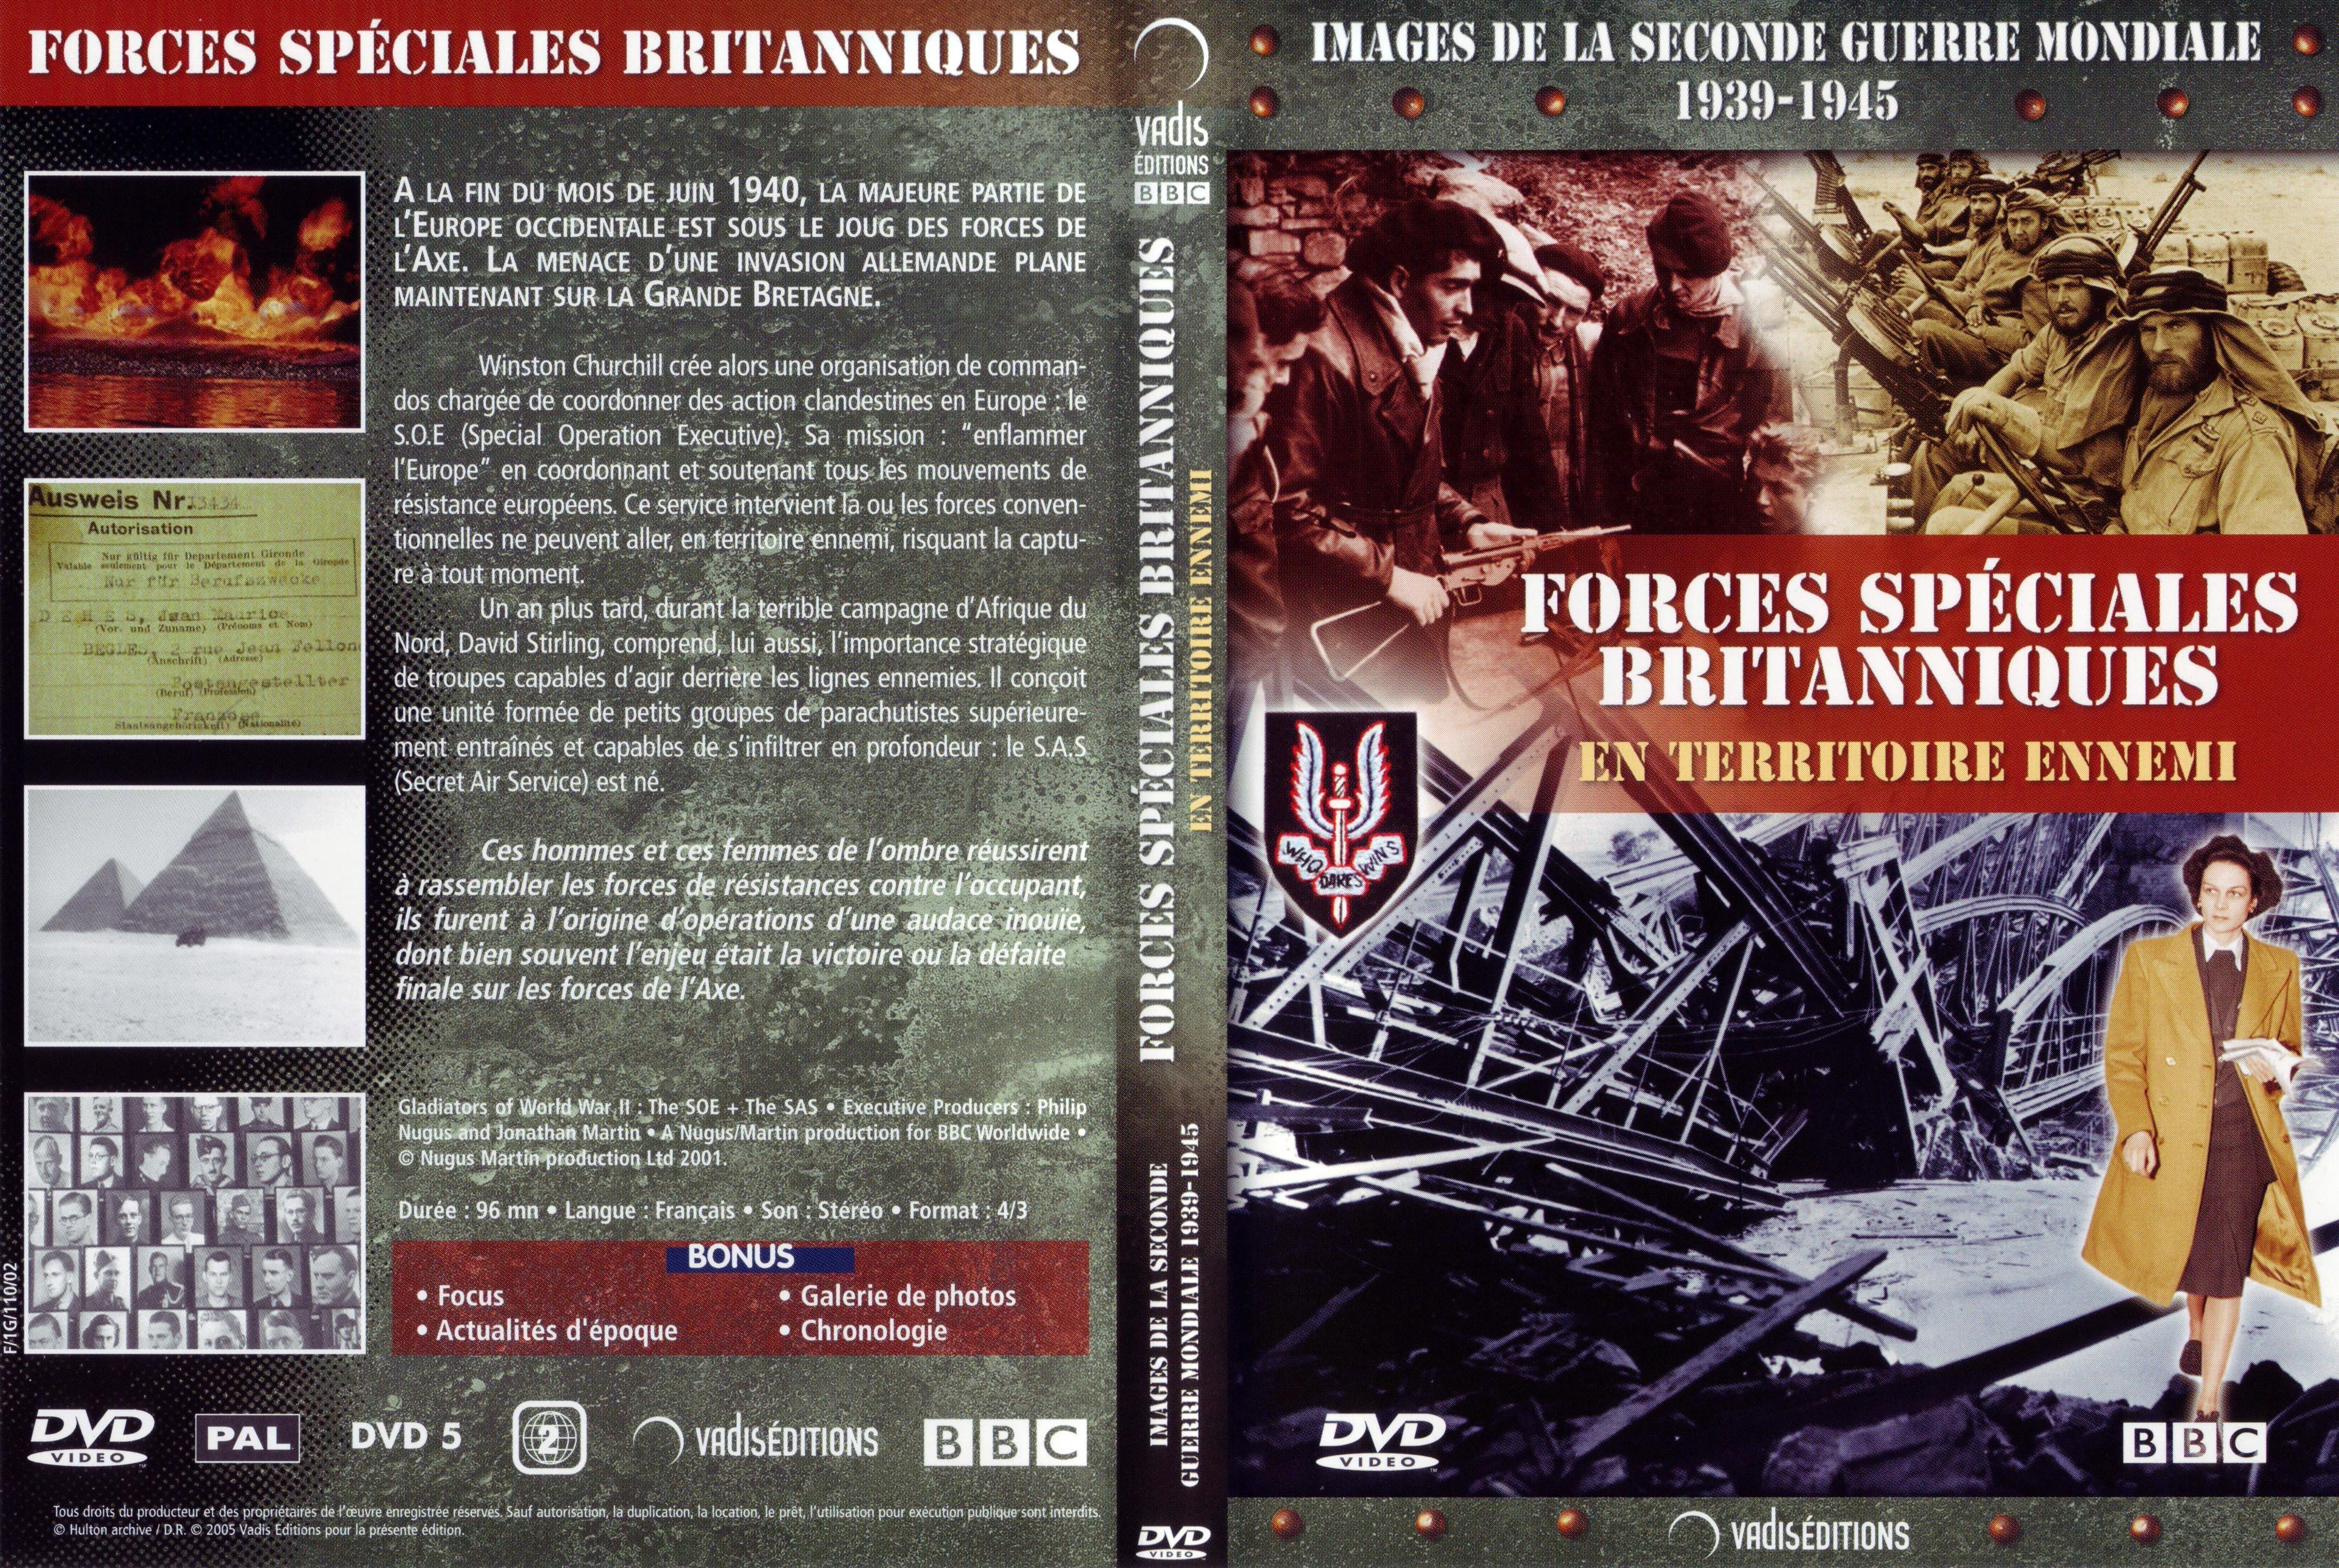 Jaquette DVD Images de la seconde guerre mondiale - Forces spciales britanniques